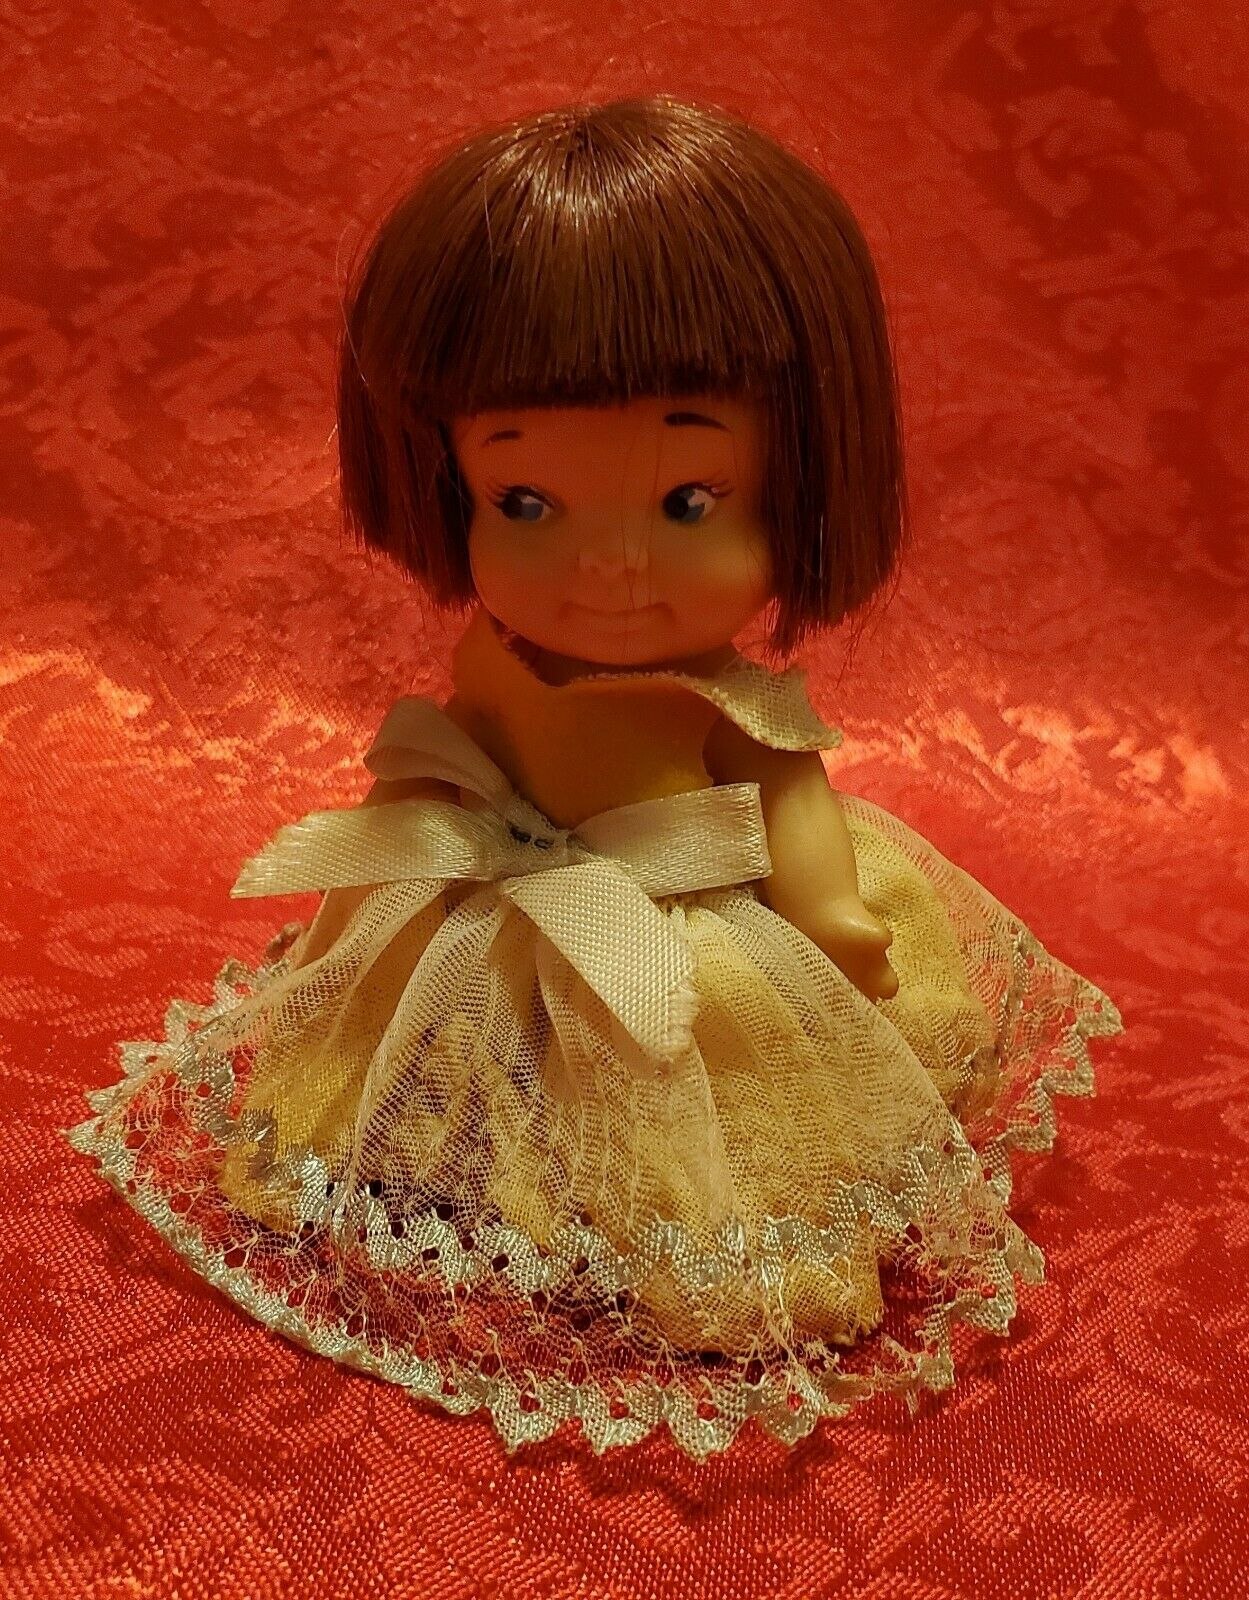 Vintage 1965 Uneeda Udco Doll Peewees 3 1/2" Auburn Hair Blue Eyes Pee Wee Toy